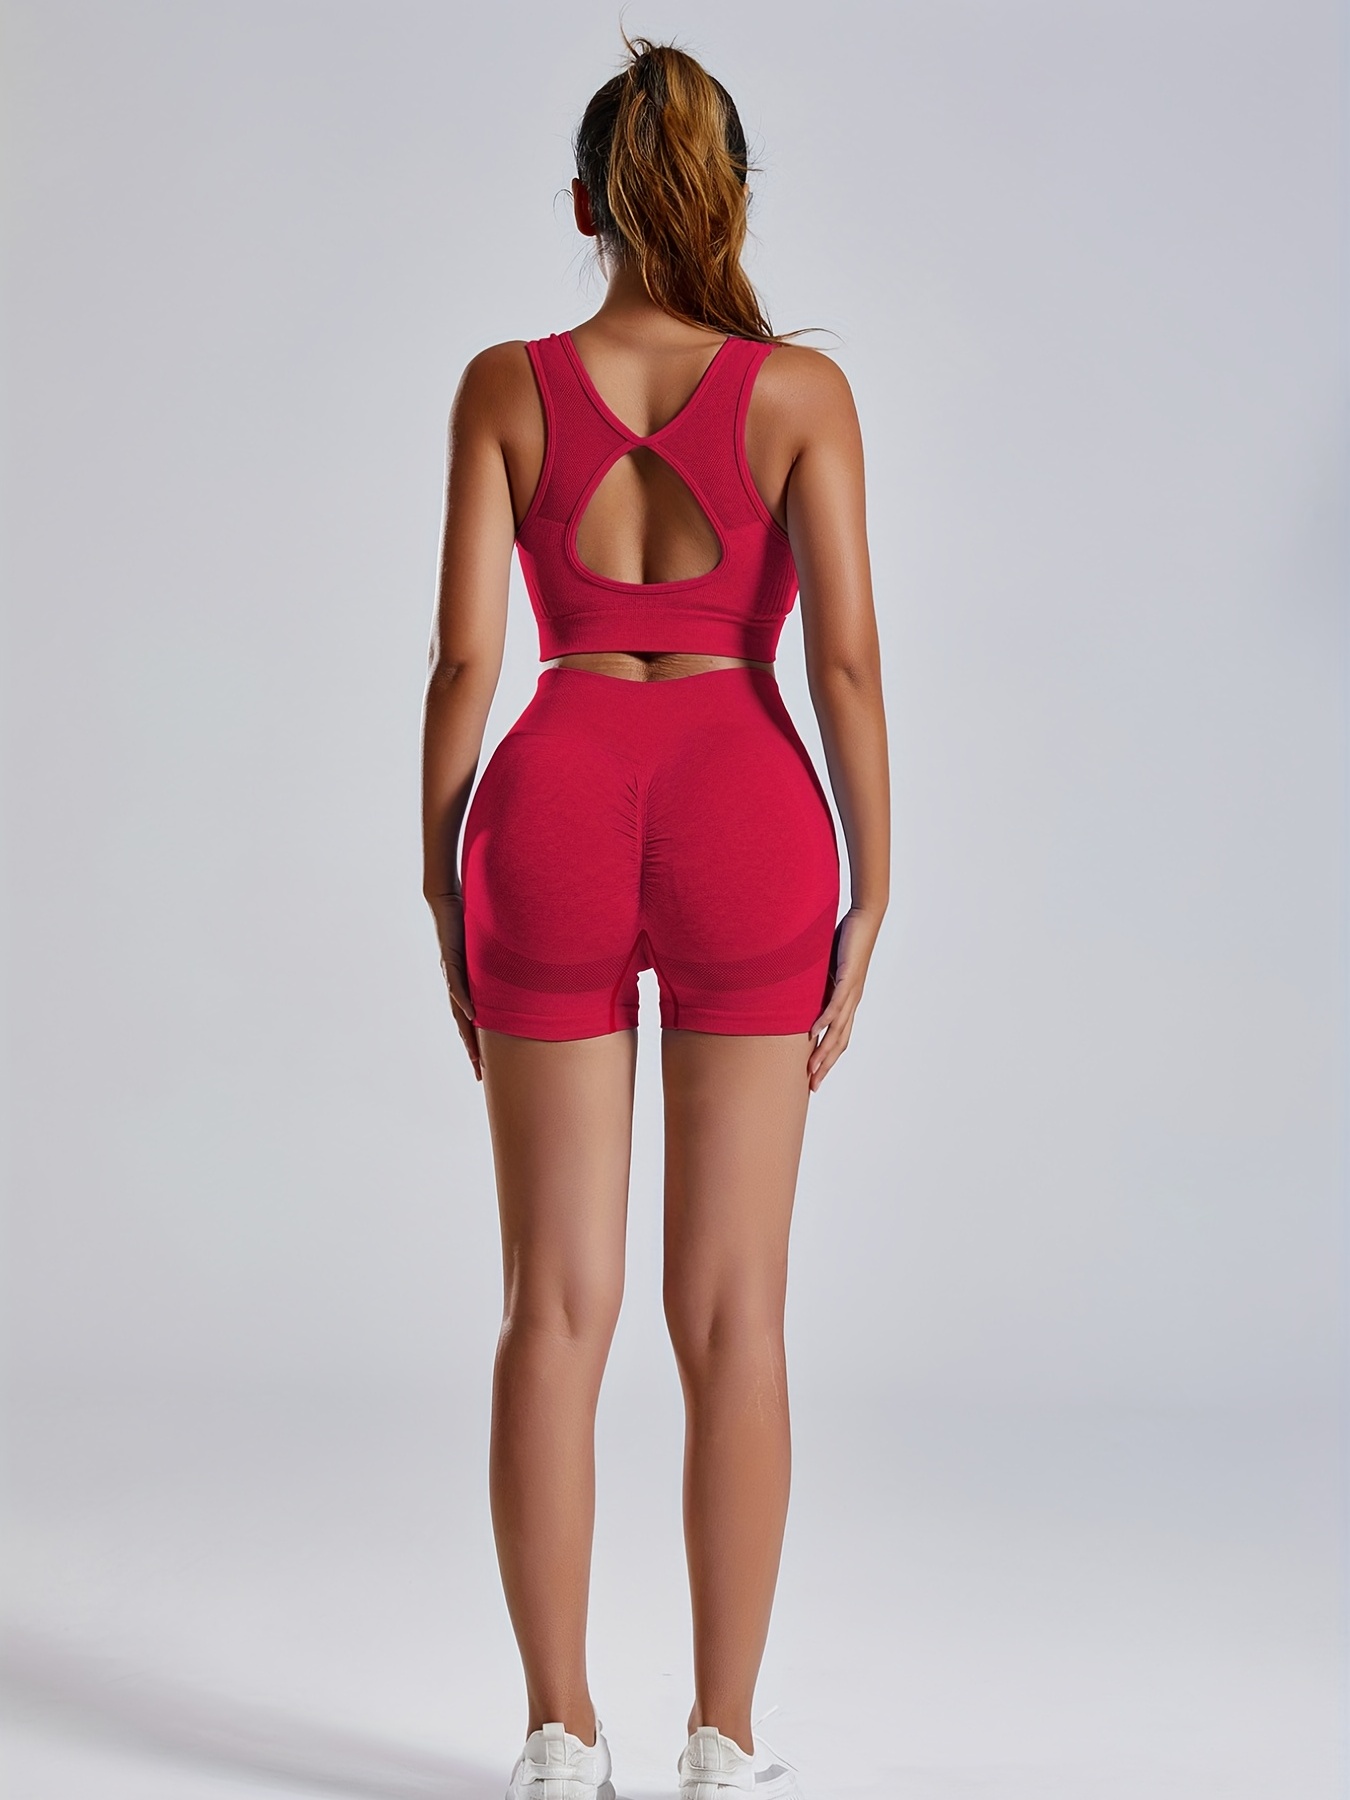 Conjunto de ropa deportiva para mujer Conjunto de pantalones cortos con top  de yoga Camiseta deportiva de manga corta, rosa roja, L Eigraketly  AP002243-07